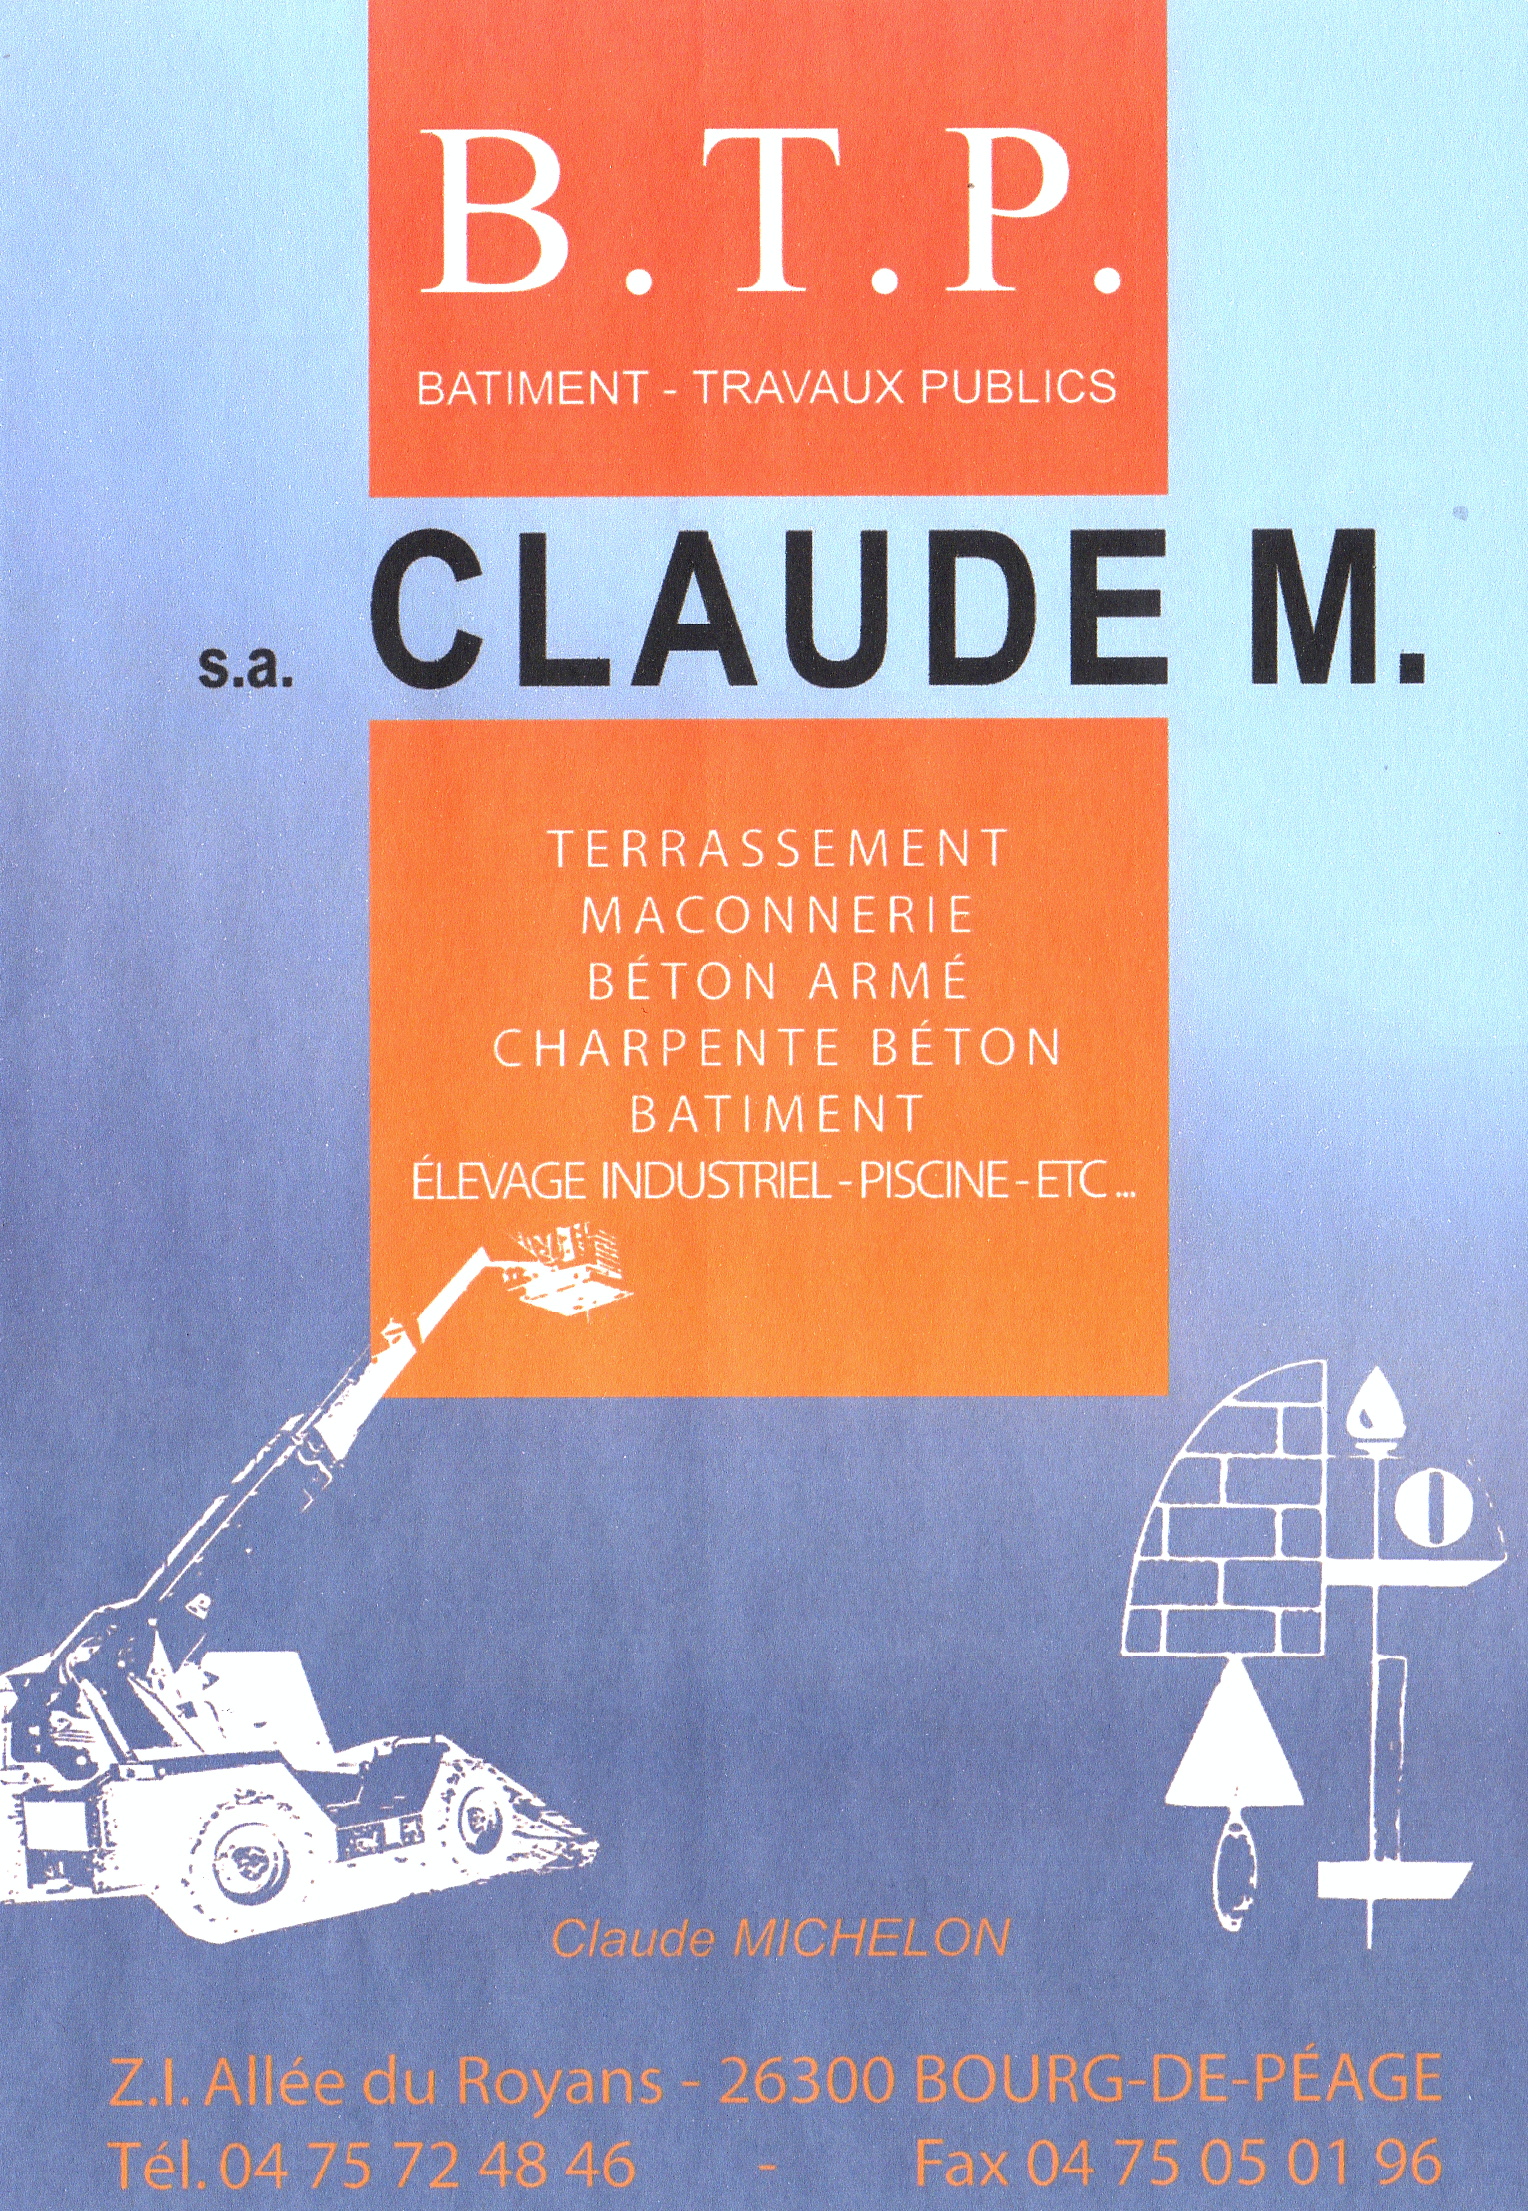 S.a Claude M